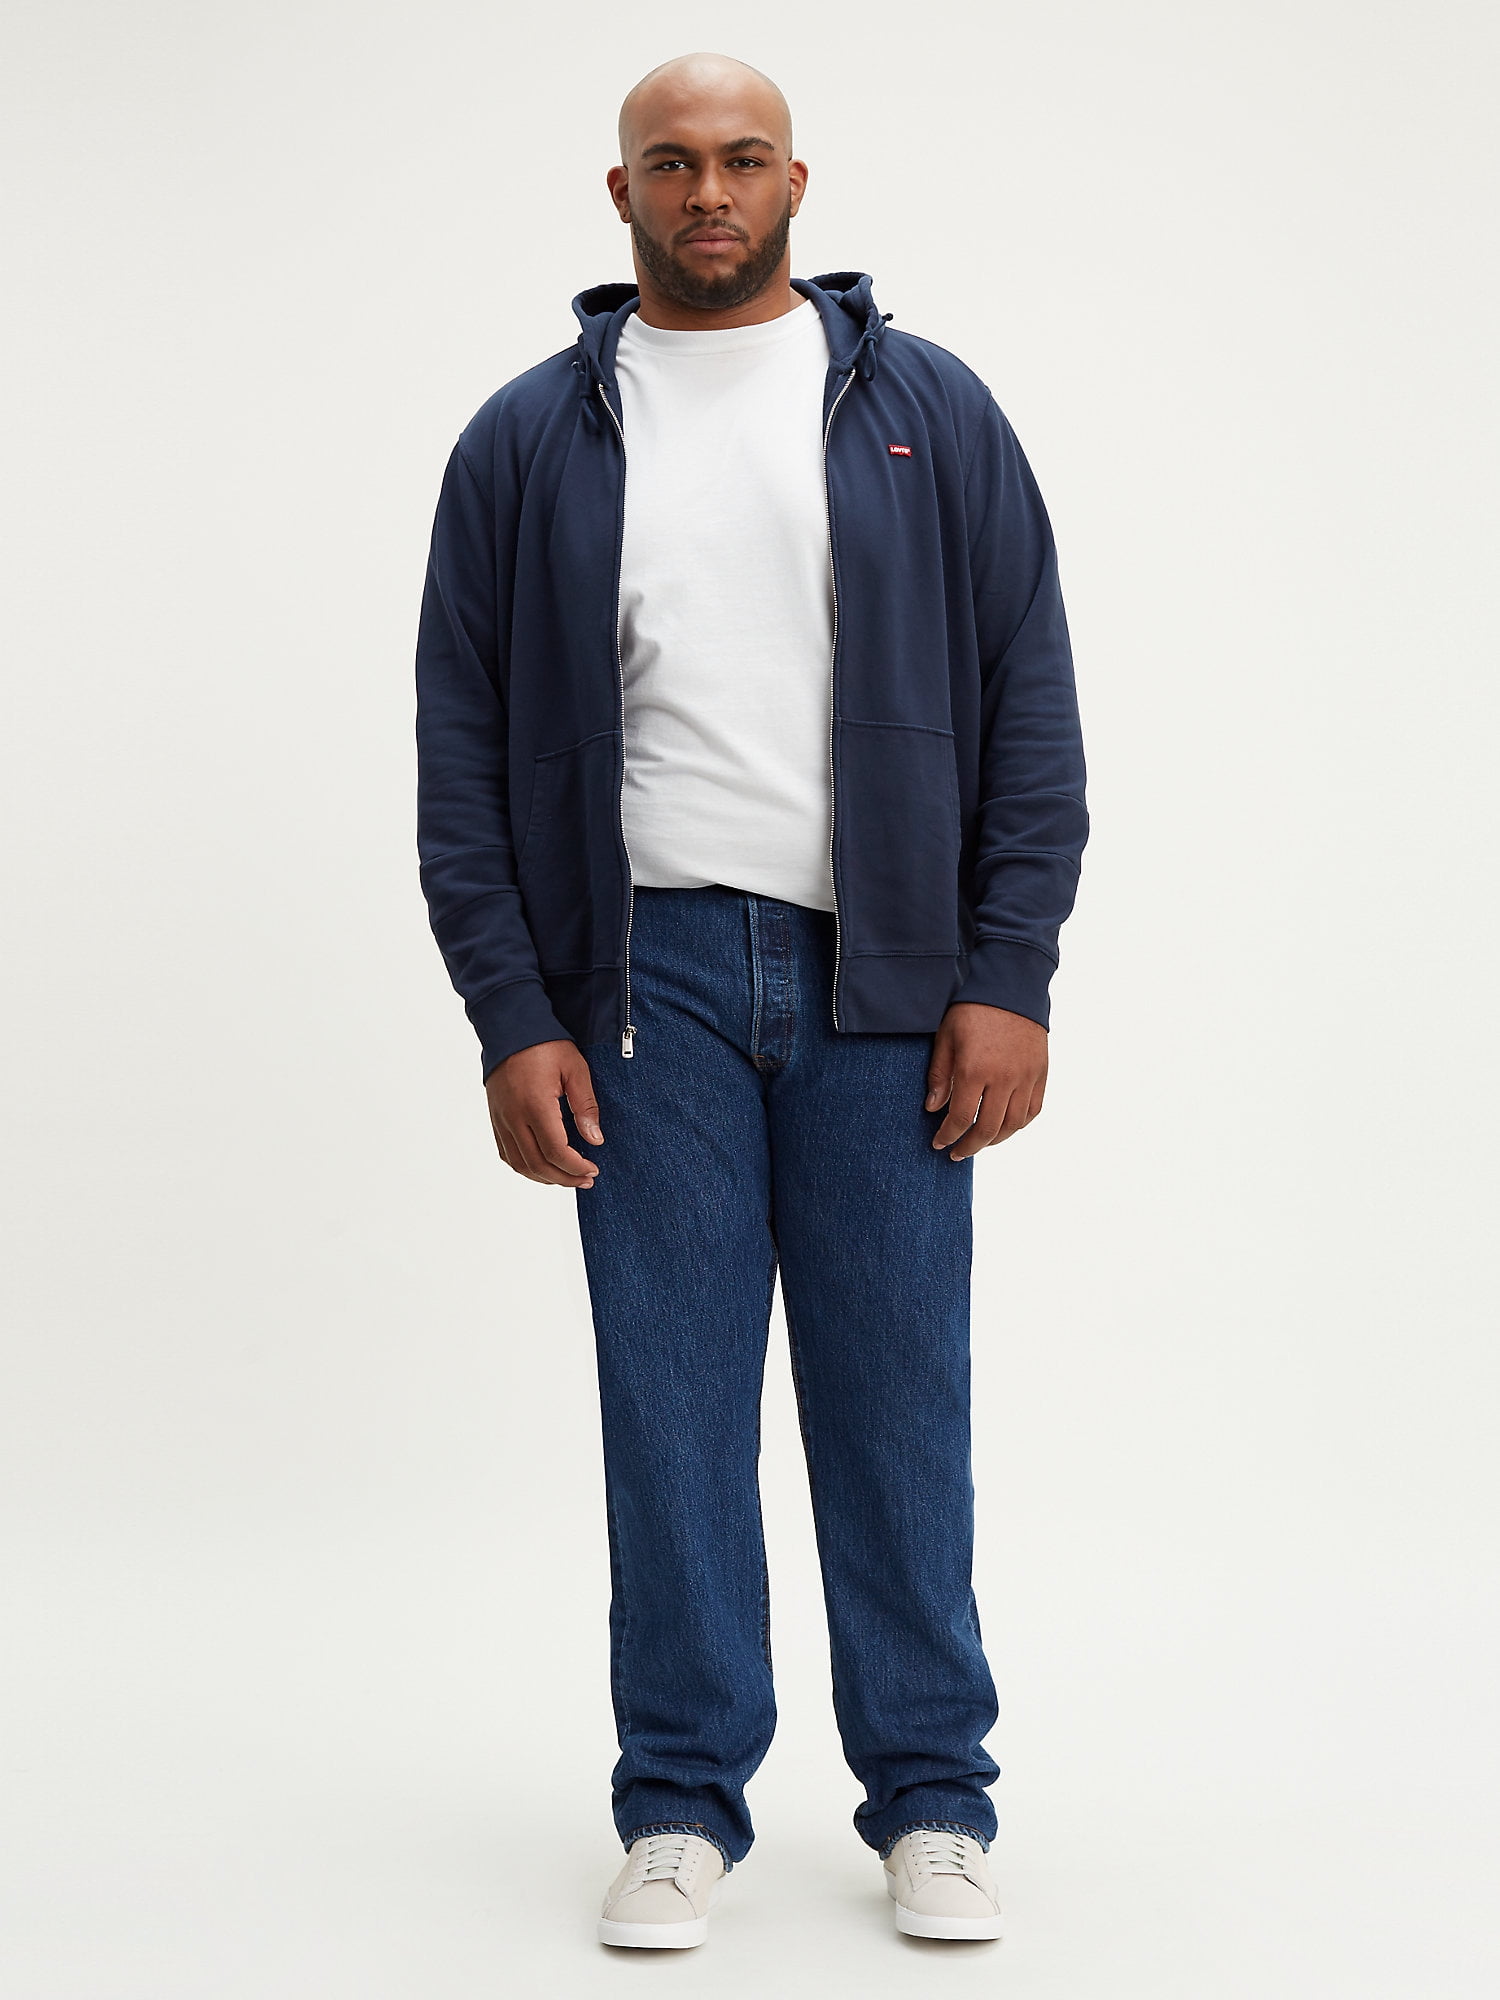 Levi's Men's Big & Tall 501 Original Fit Jeans 